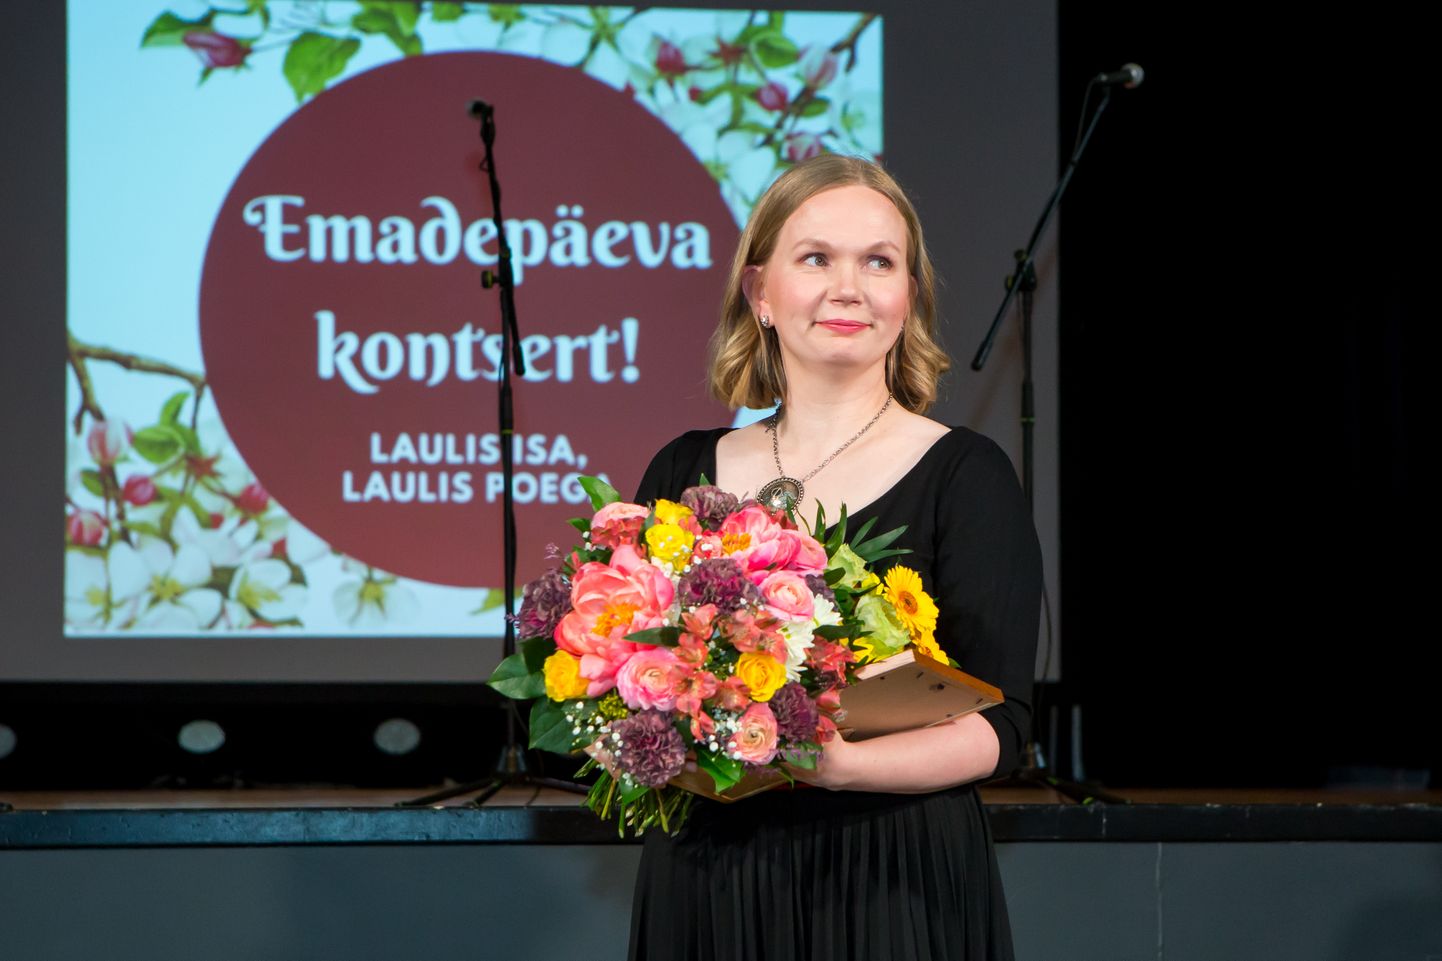 AASTA EMA: Jaanika Tiitson valiti kahe aasta eest Saare maakonna aasta emaks.